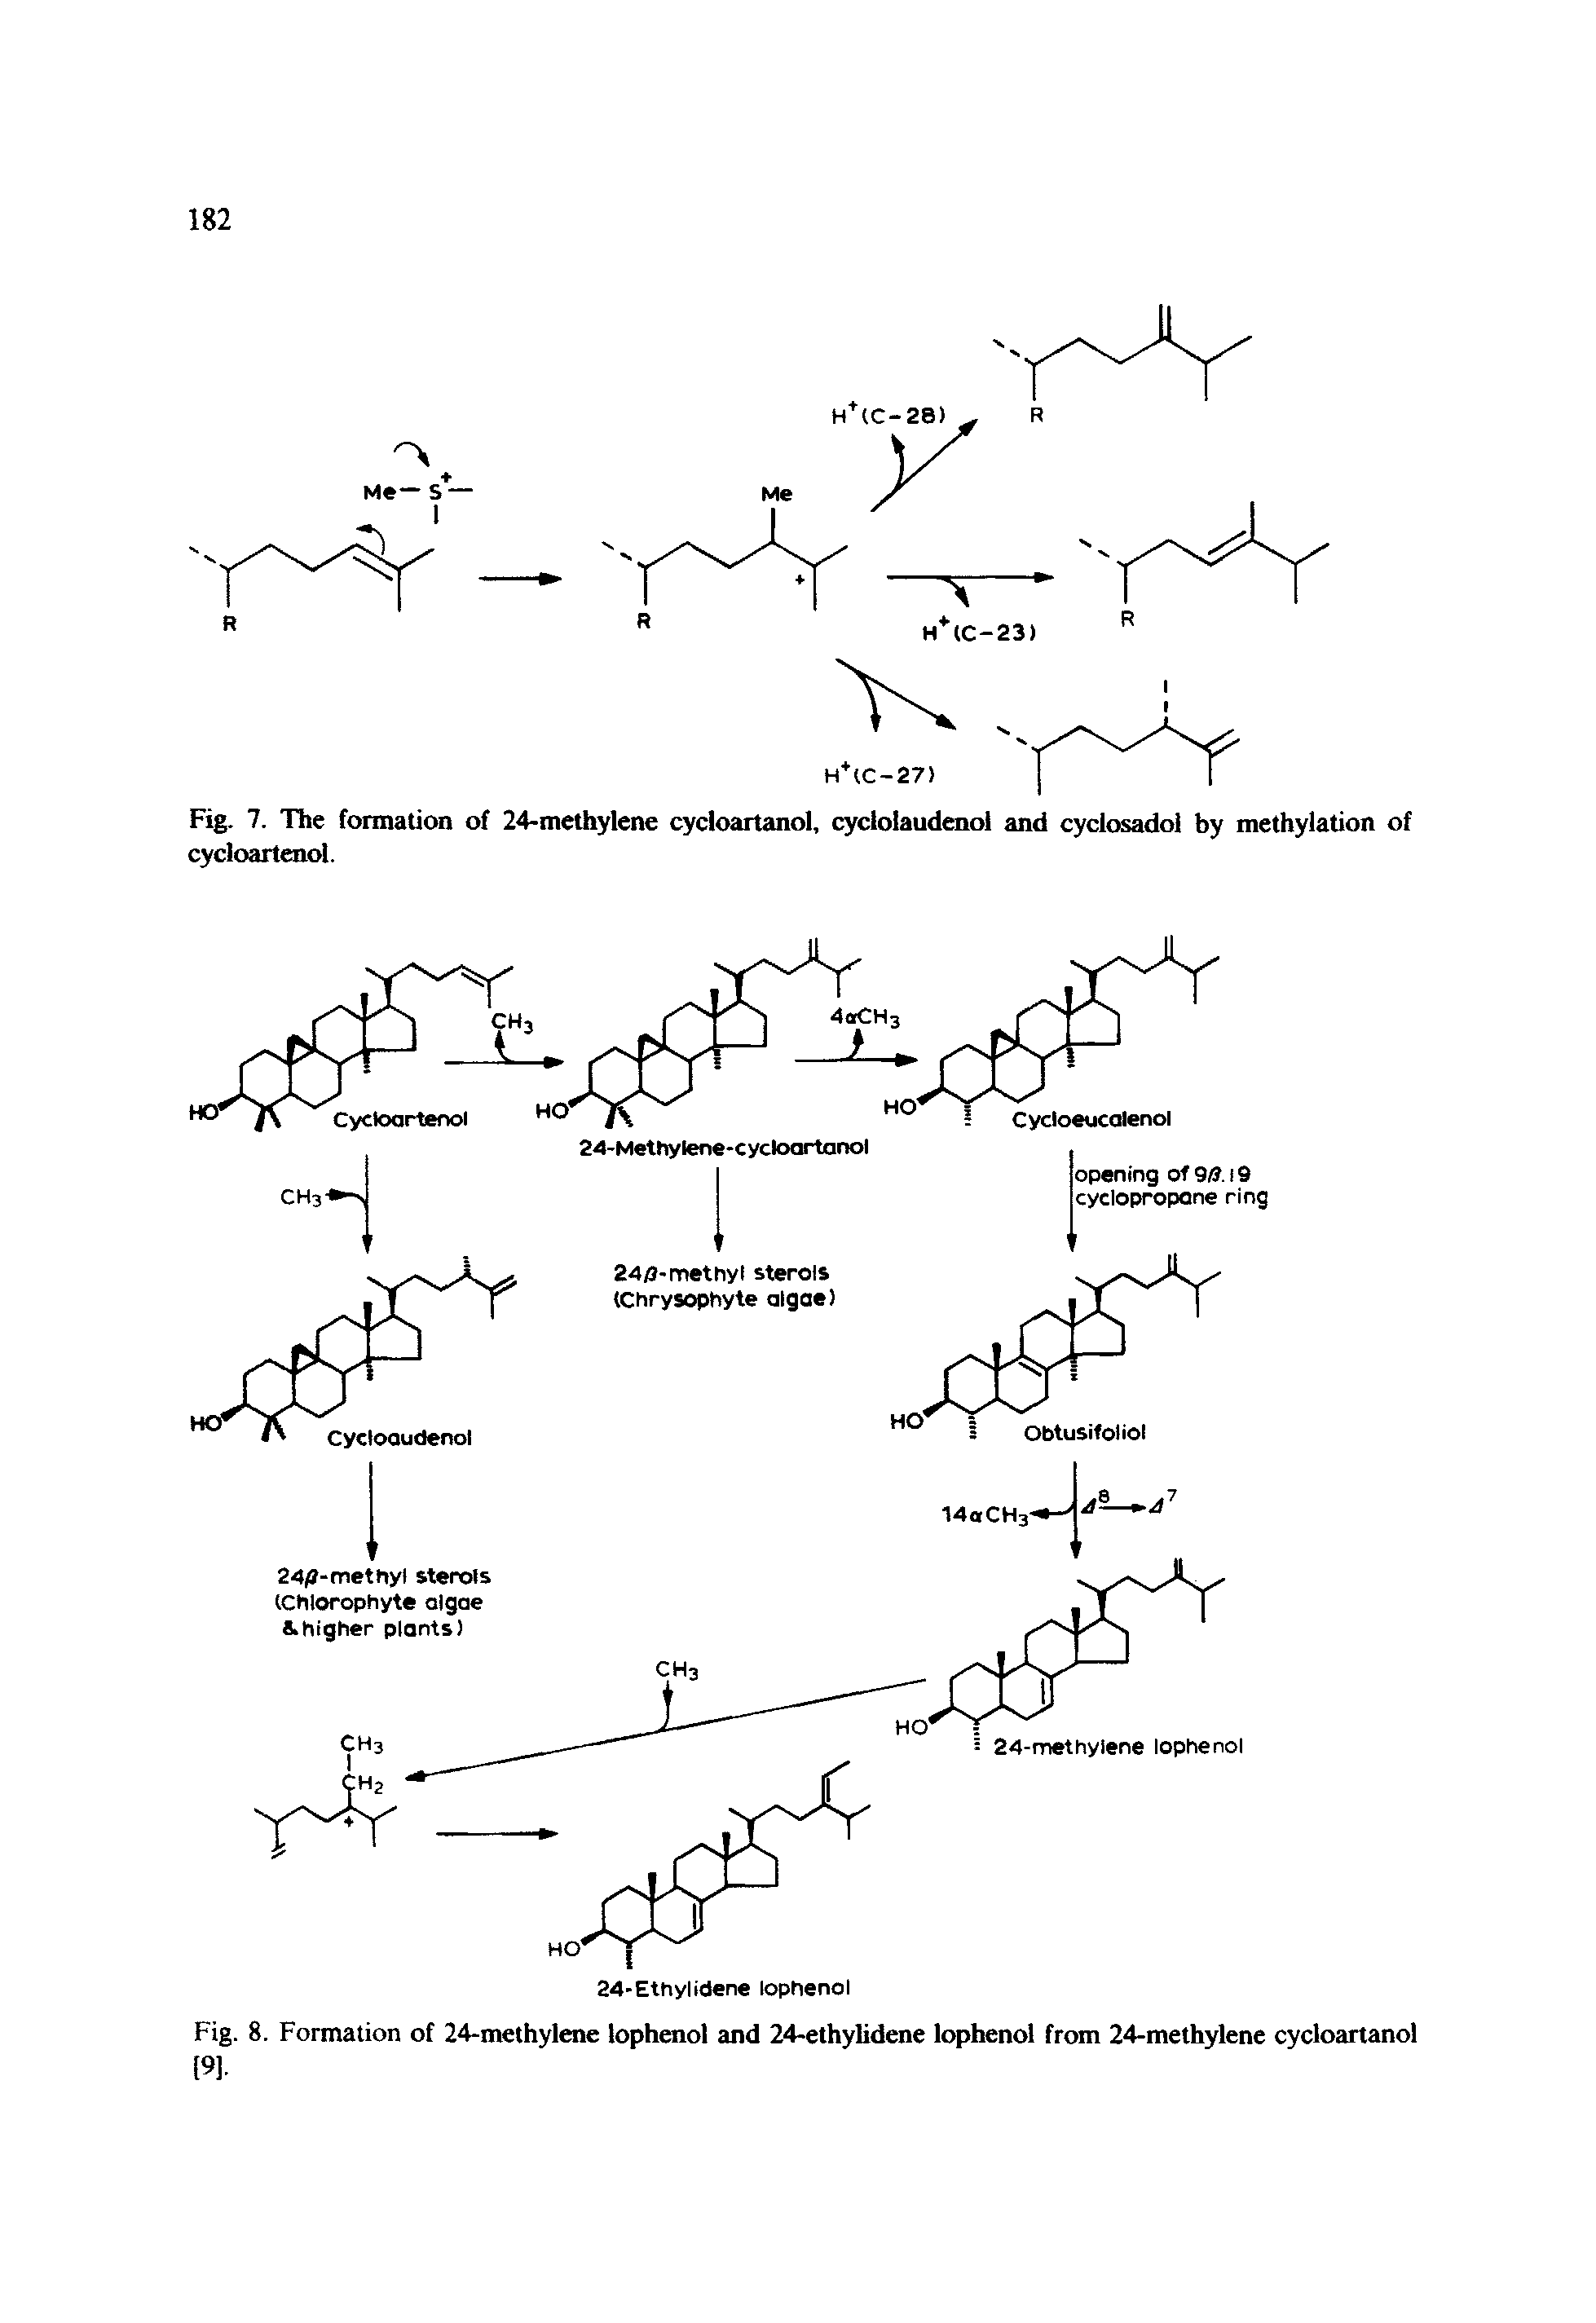 Fig. 7. The formation of 24-methylene cycloartanol, cyclolaudenol and cyclosadol by methylation of cycloartenol.